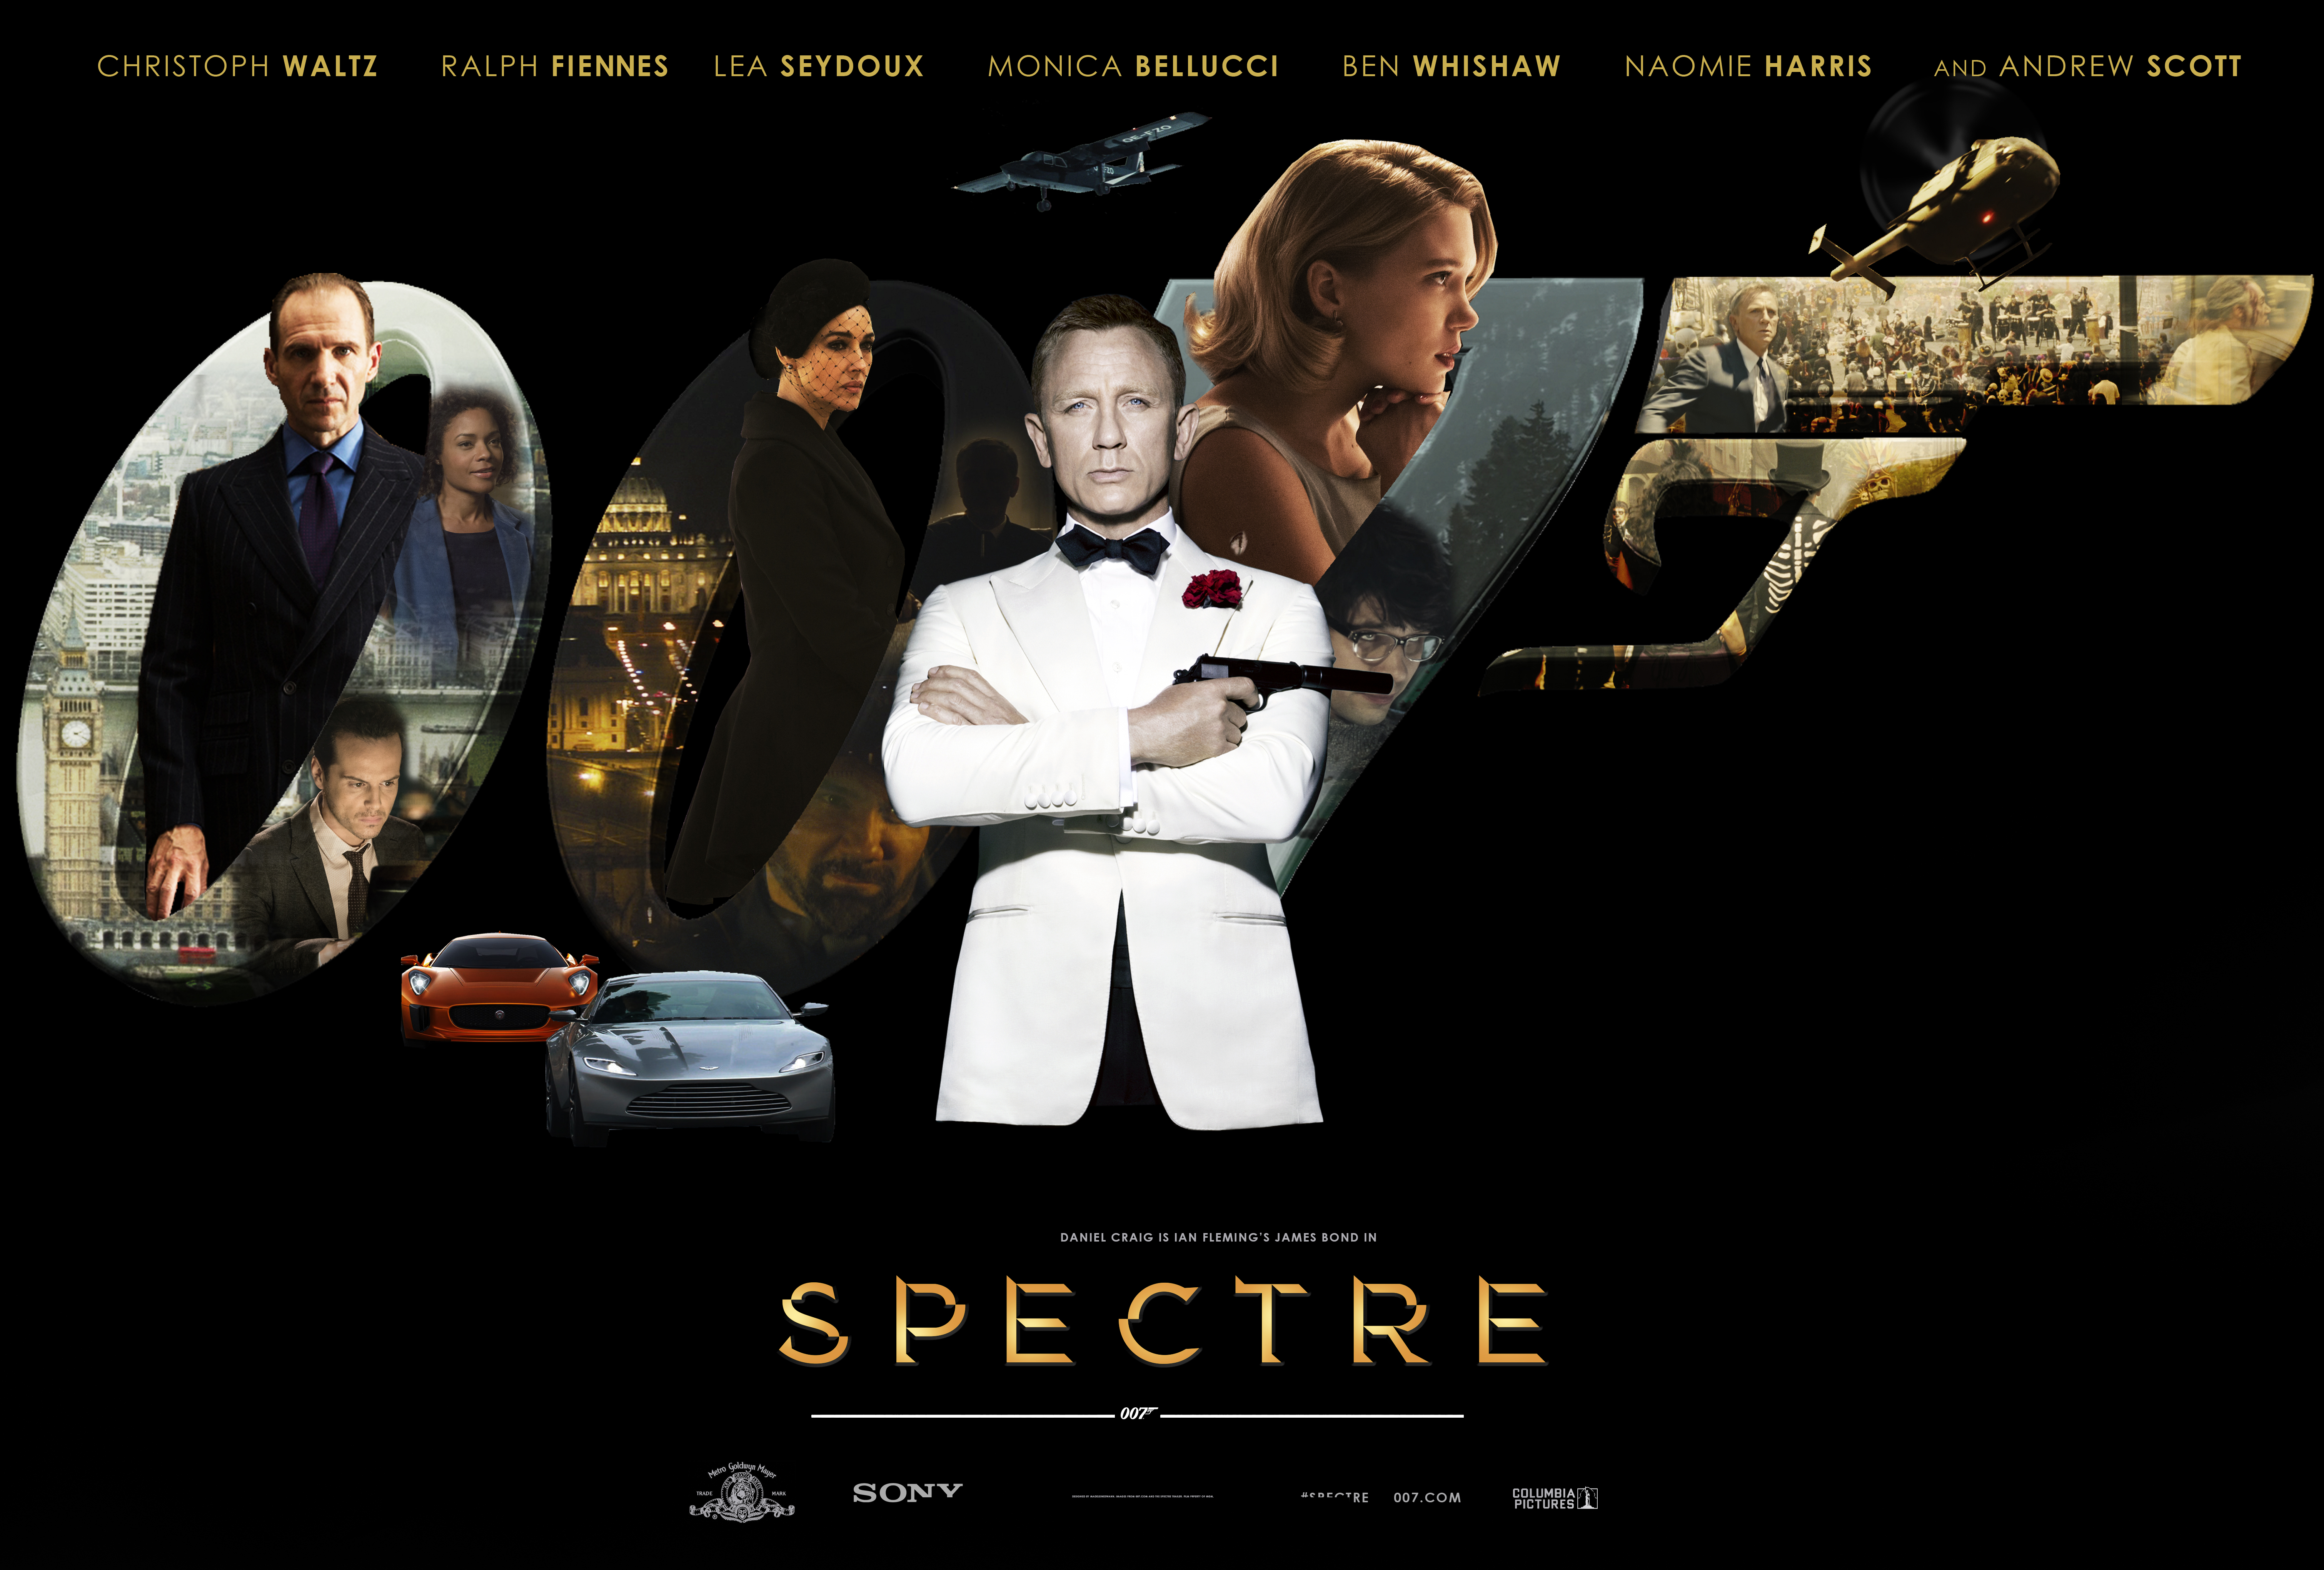 Spectre 007 Theme Windows 7